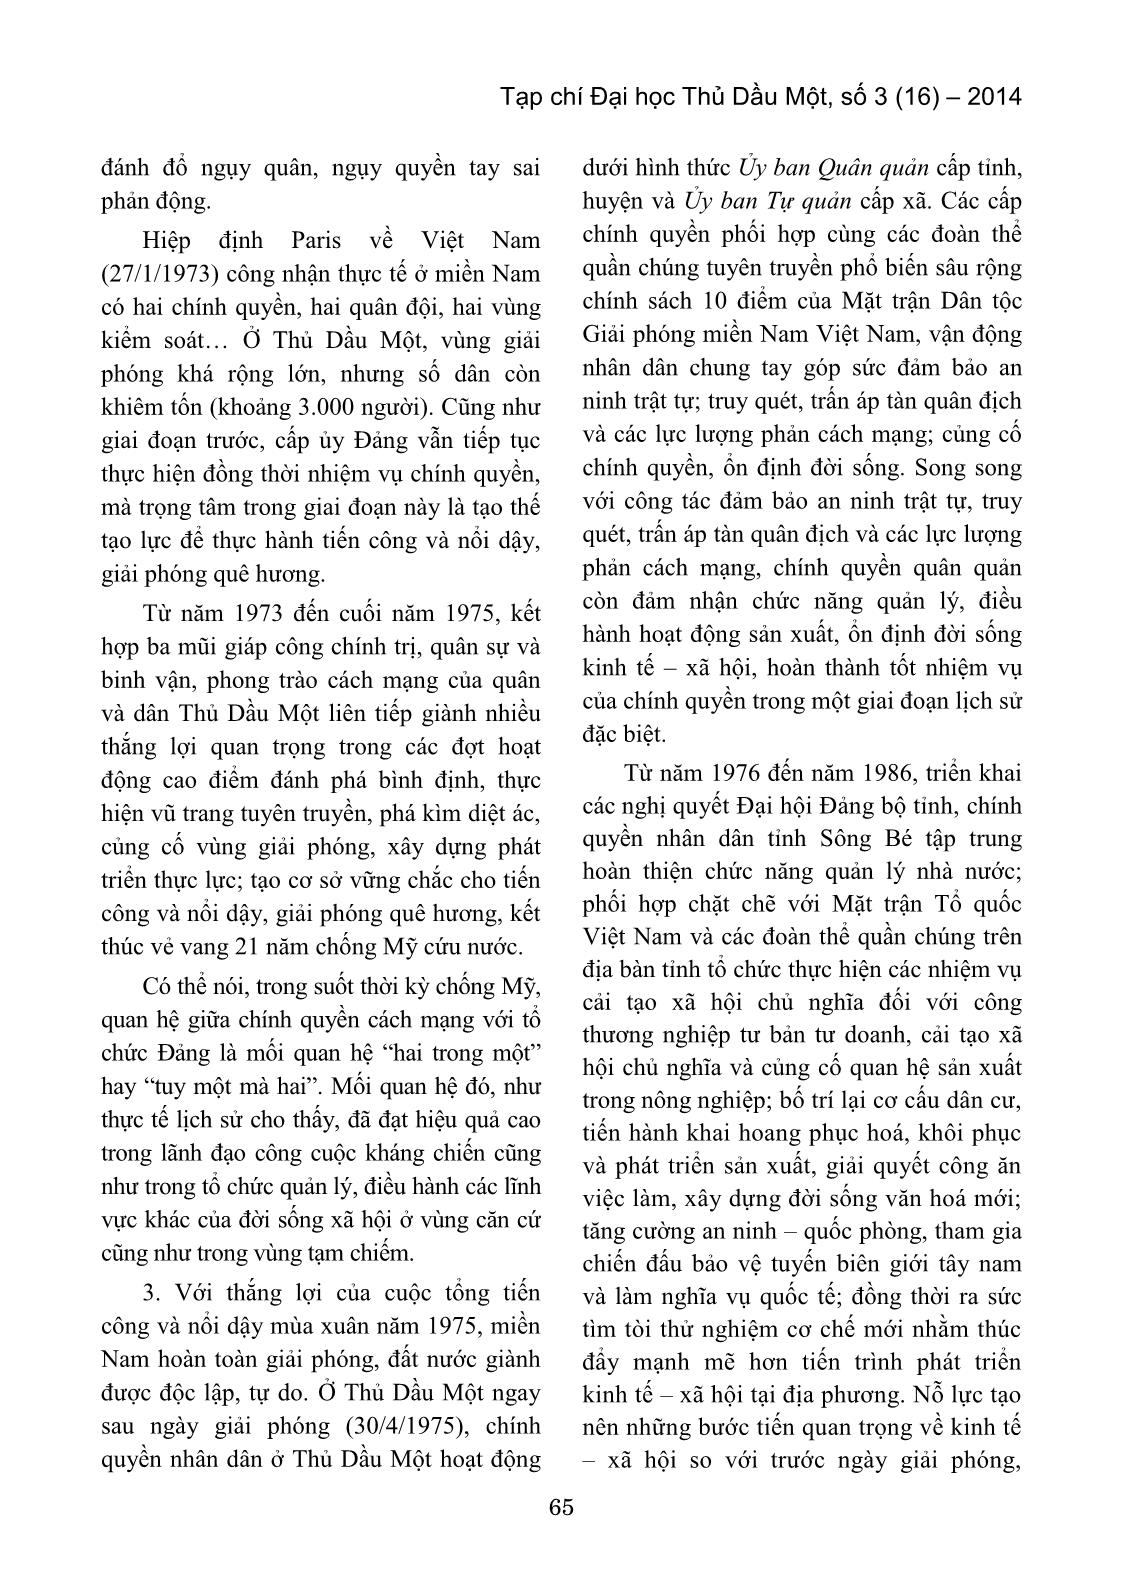 Bảy mươi năm xây dựng, trưởng thành của chính quyền nhân dân ở Bình Dương (1945 – 2014) trang 5